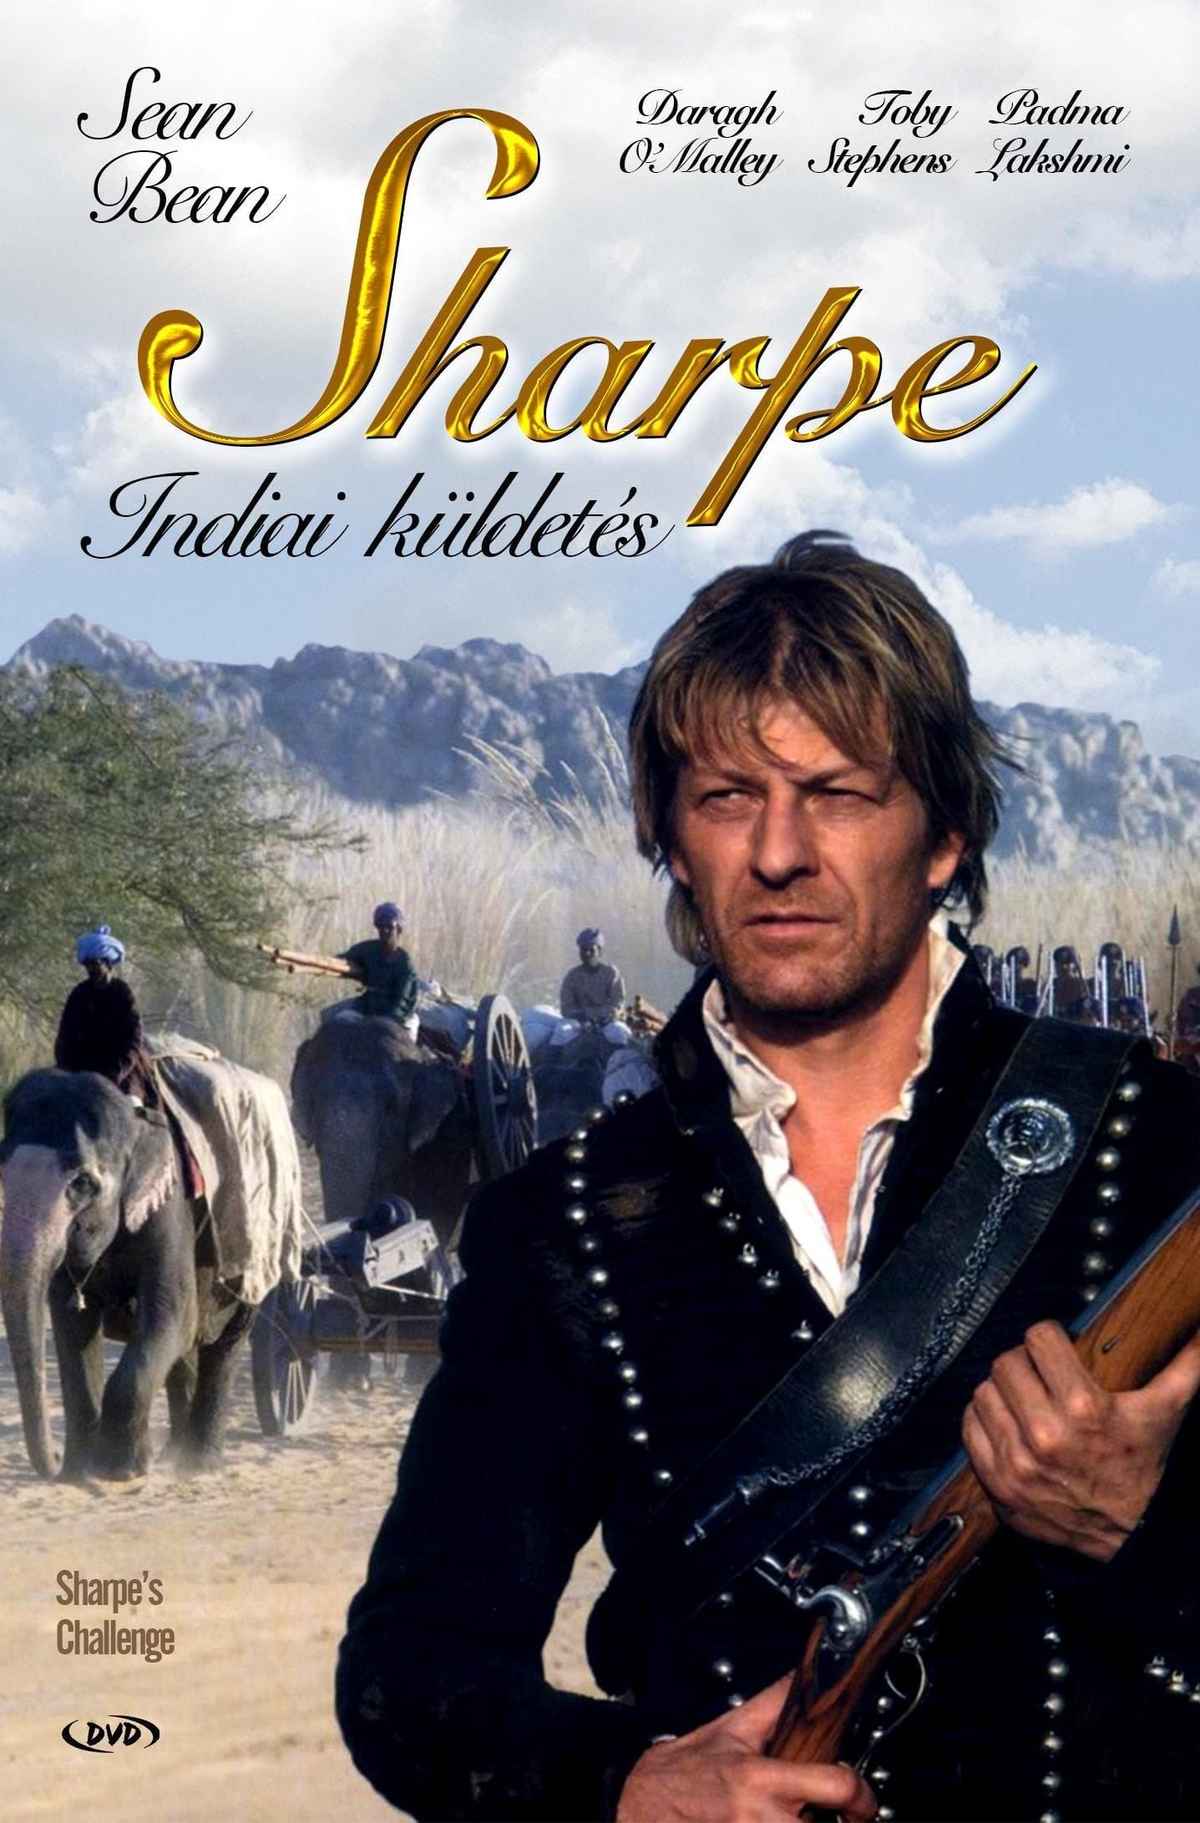 Sharpe's Challenge